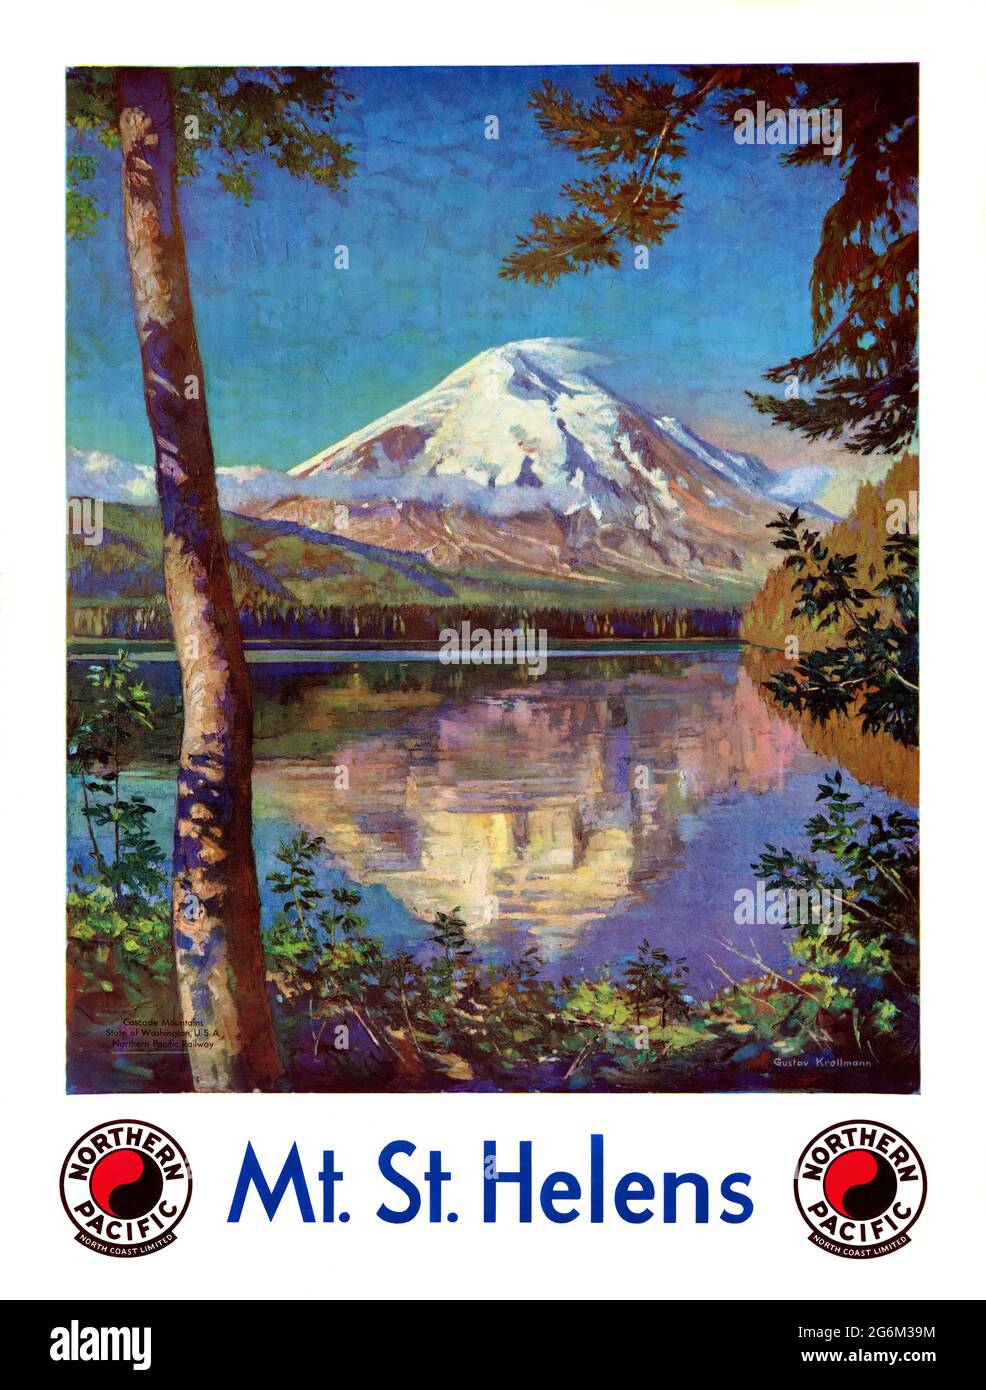 Mt. St. Helens. Nordpazifik. North Coast Limited von Gustav Wilhelm Krollmann (1888-1962). Restauriertes Vintage-Poster, das 1935 in den USA veröffentlicht wurde. Stockfoto